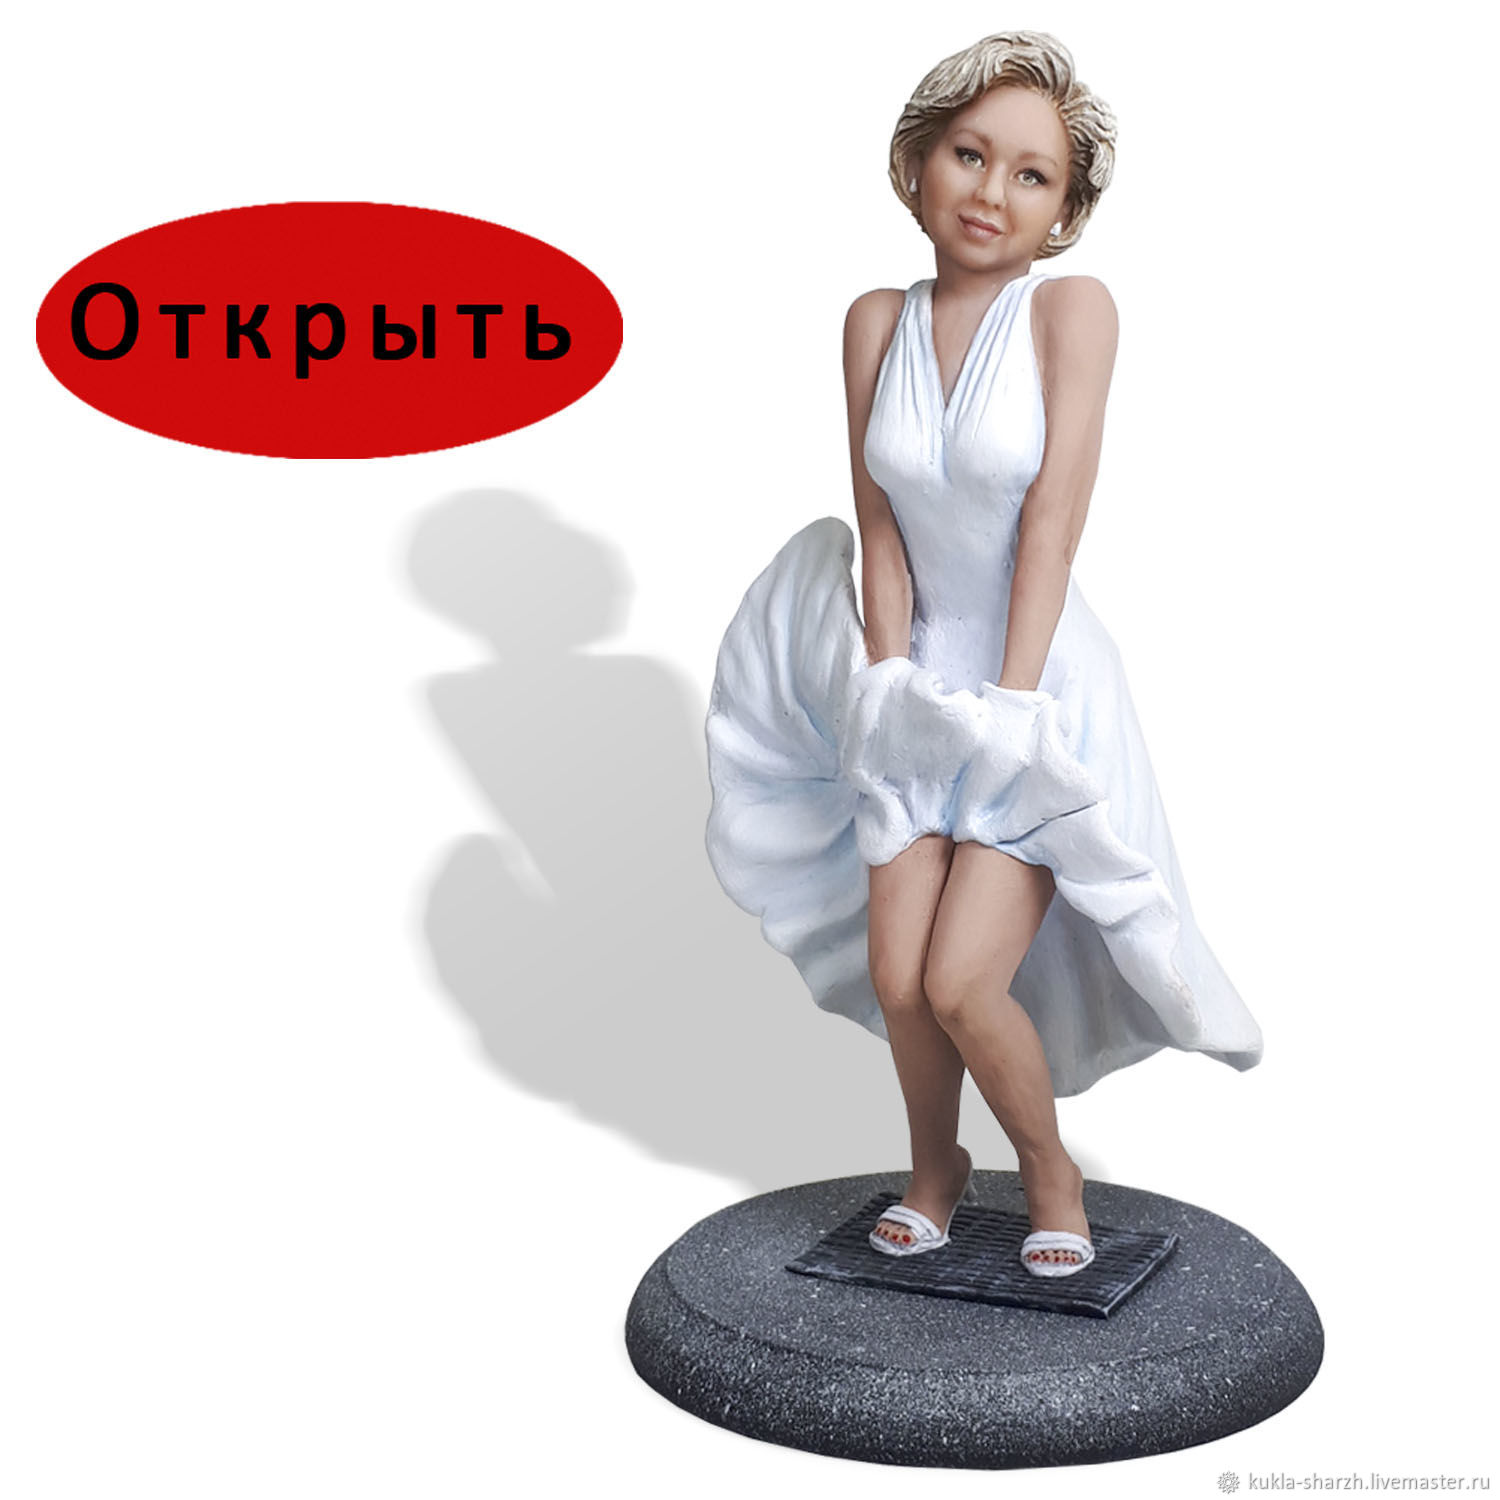 Marilyn monroe figurine 💖 Сексуальная Женская Вышивка, алмаз